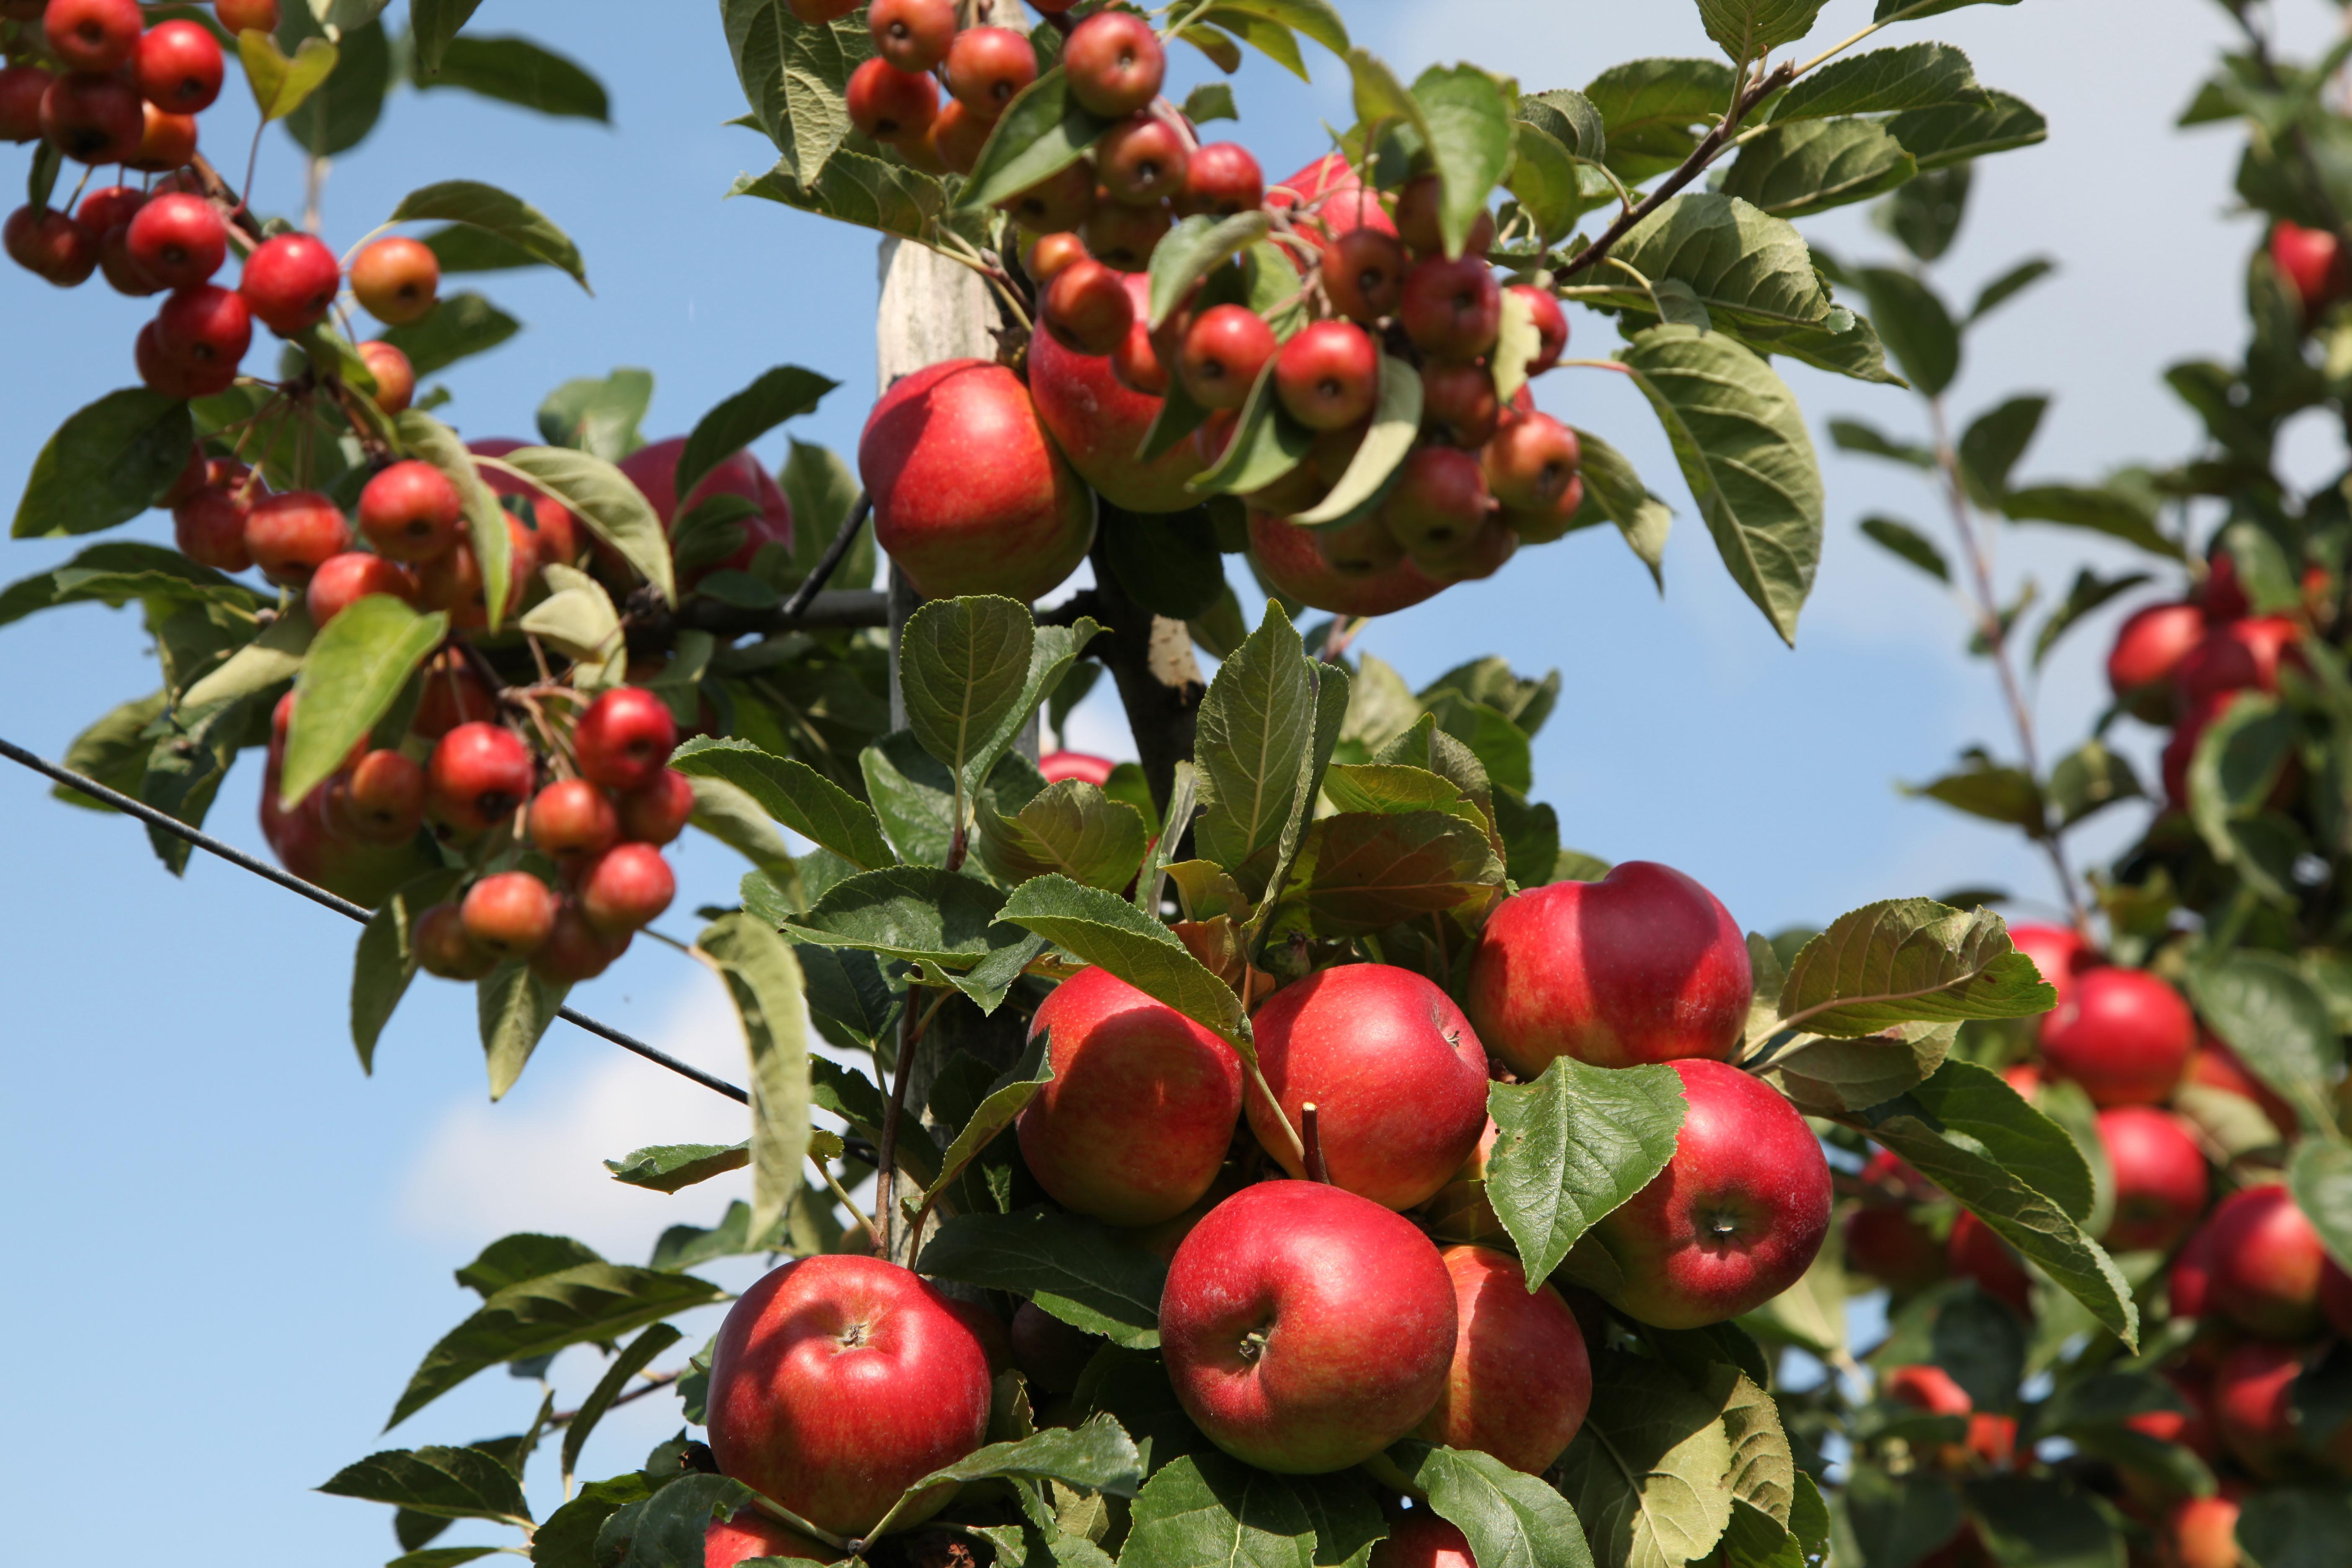 ekoplaza-biodynamisch-vandenelzen-harrievandenelzen-appels